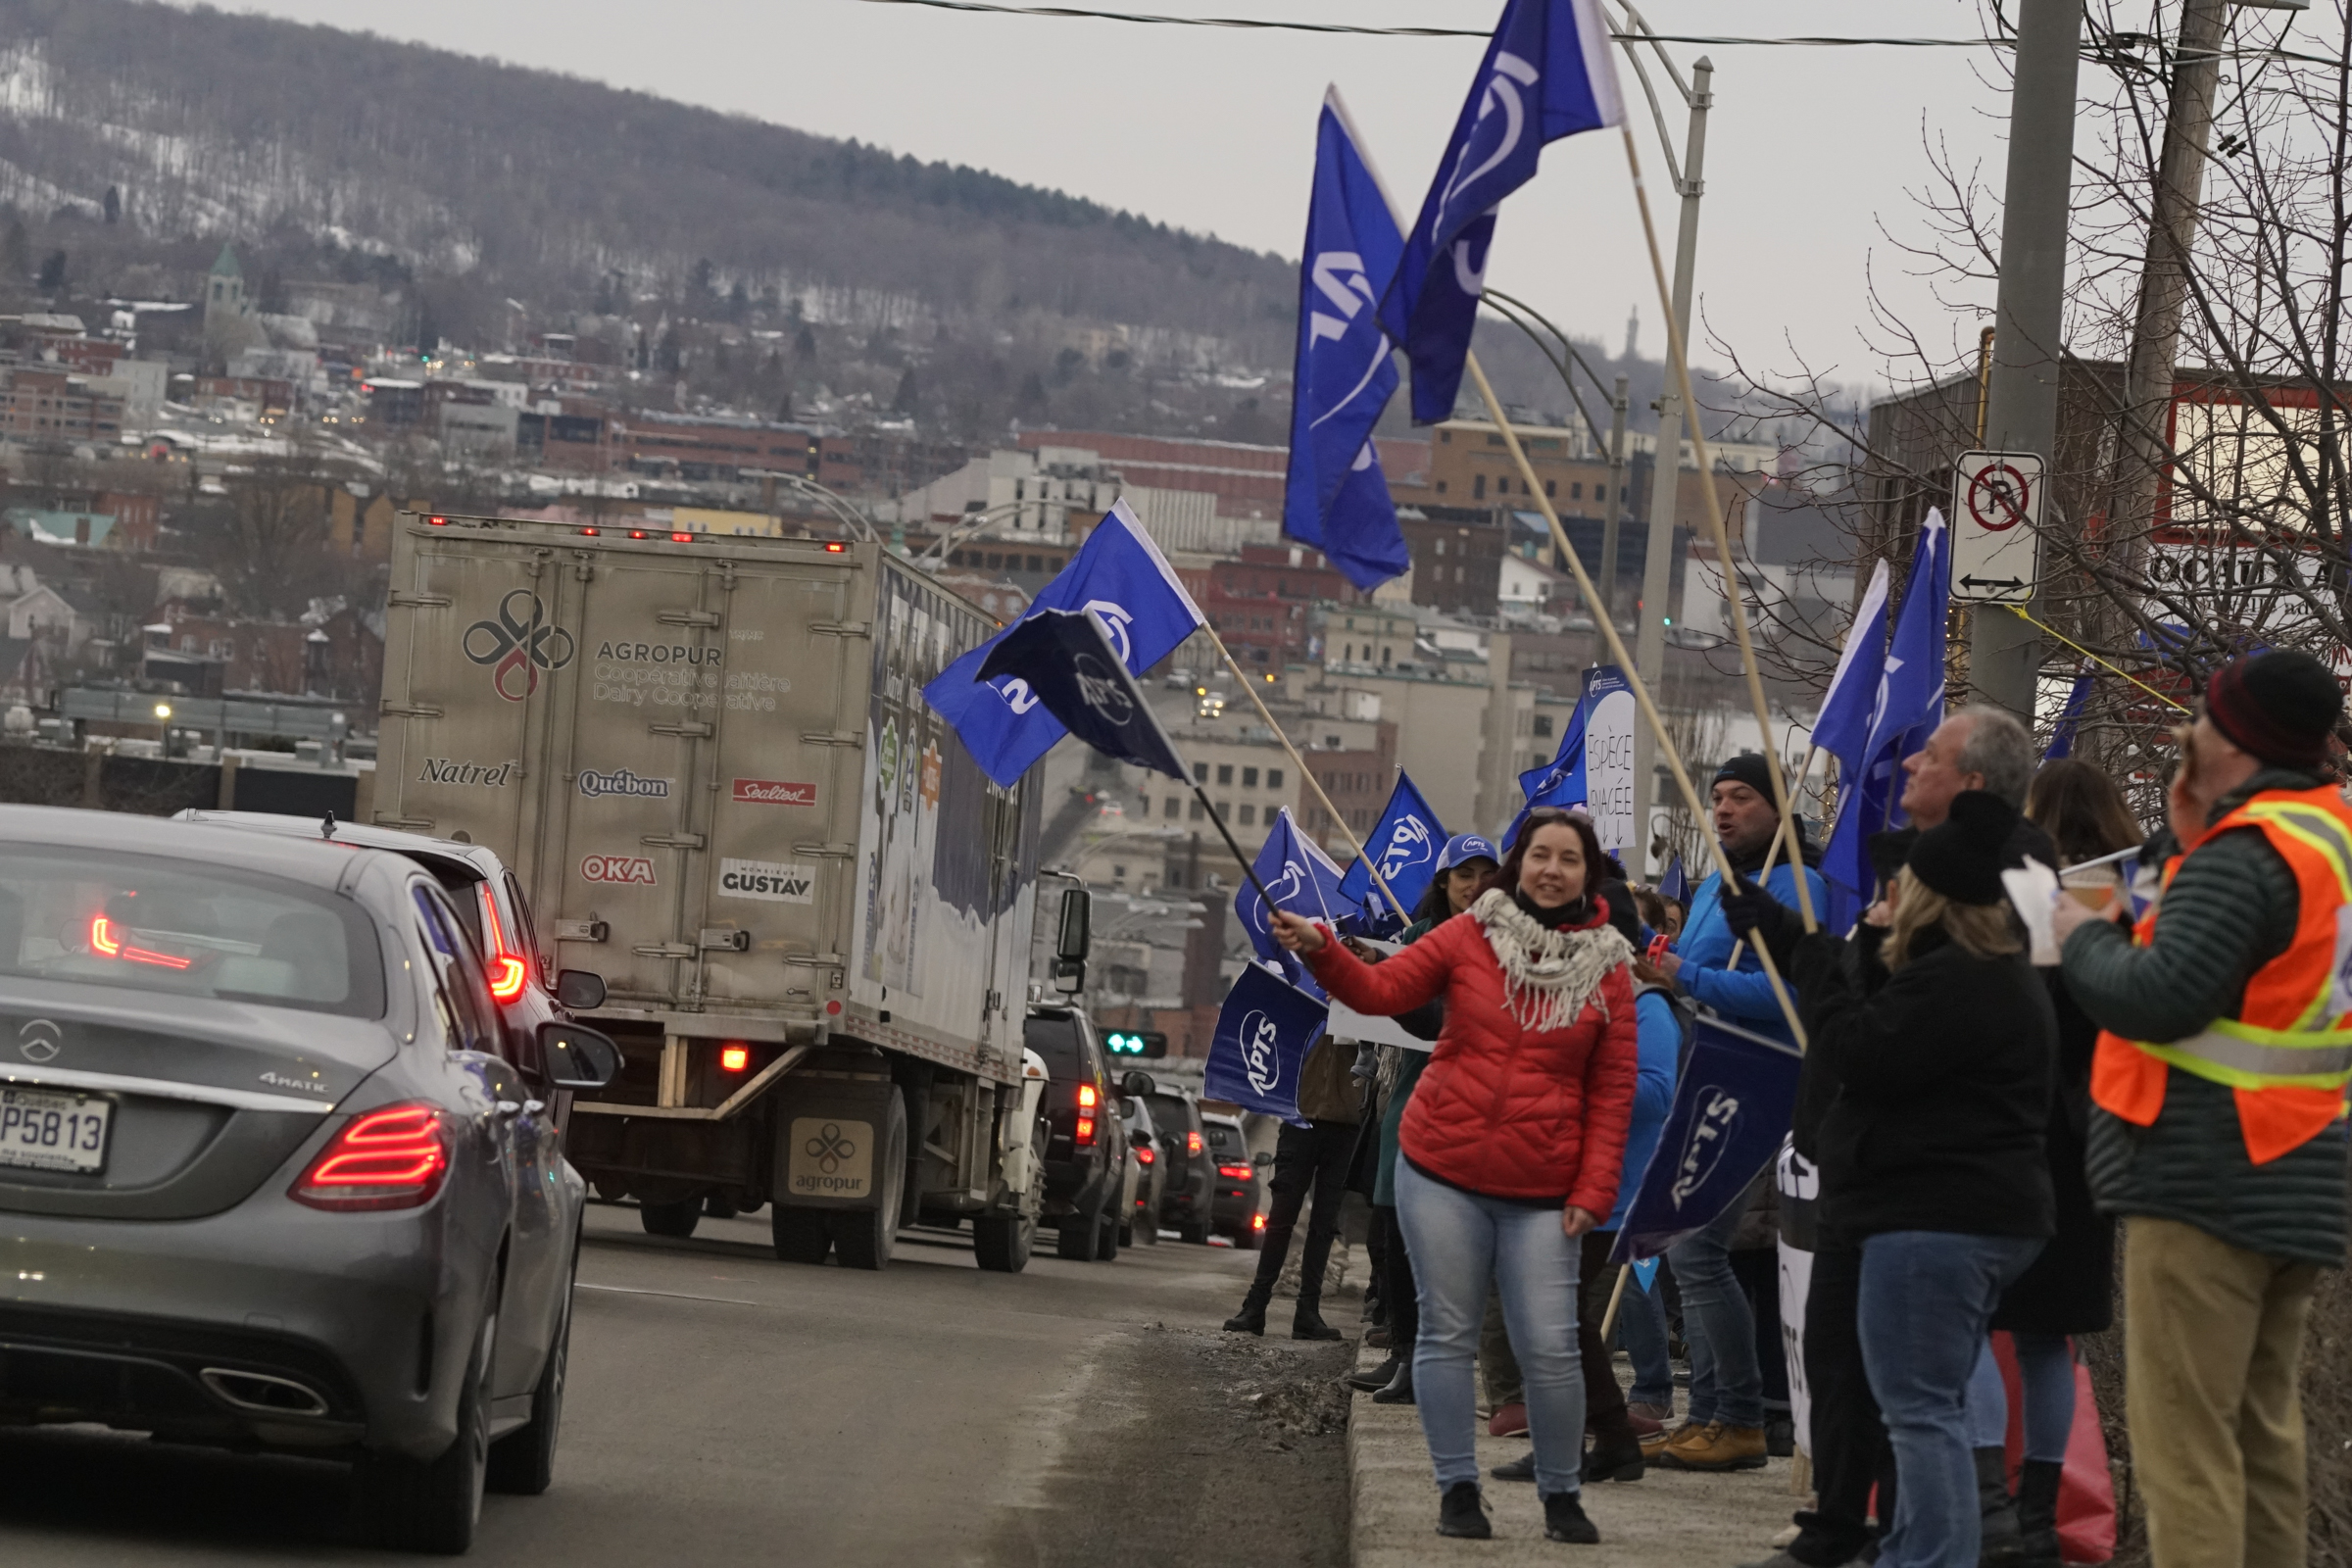 Image En quête d’une réelle reconnaissance:  manifestation à Sherbrooke